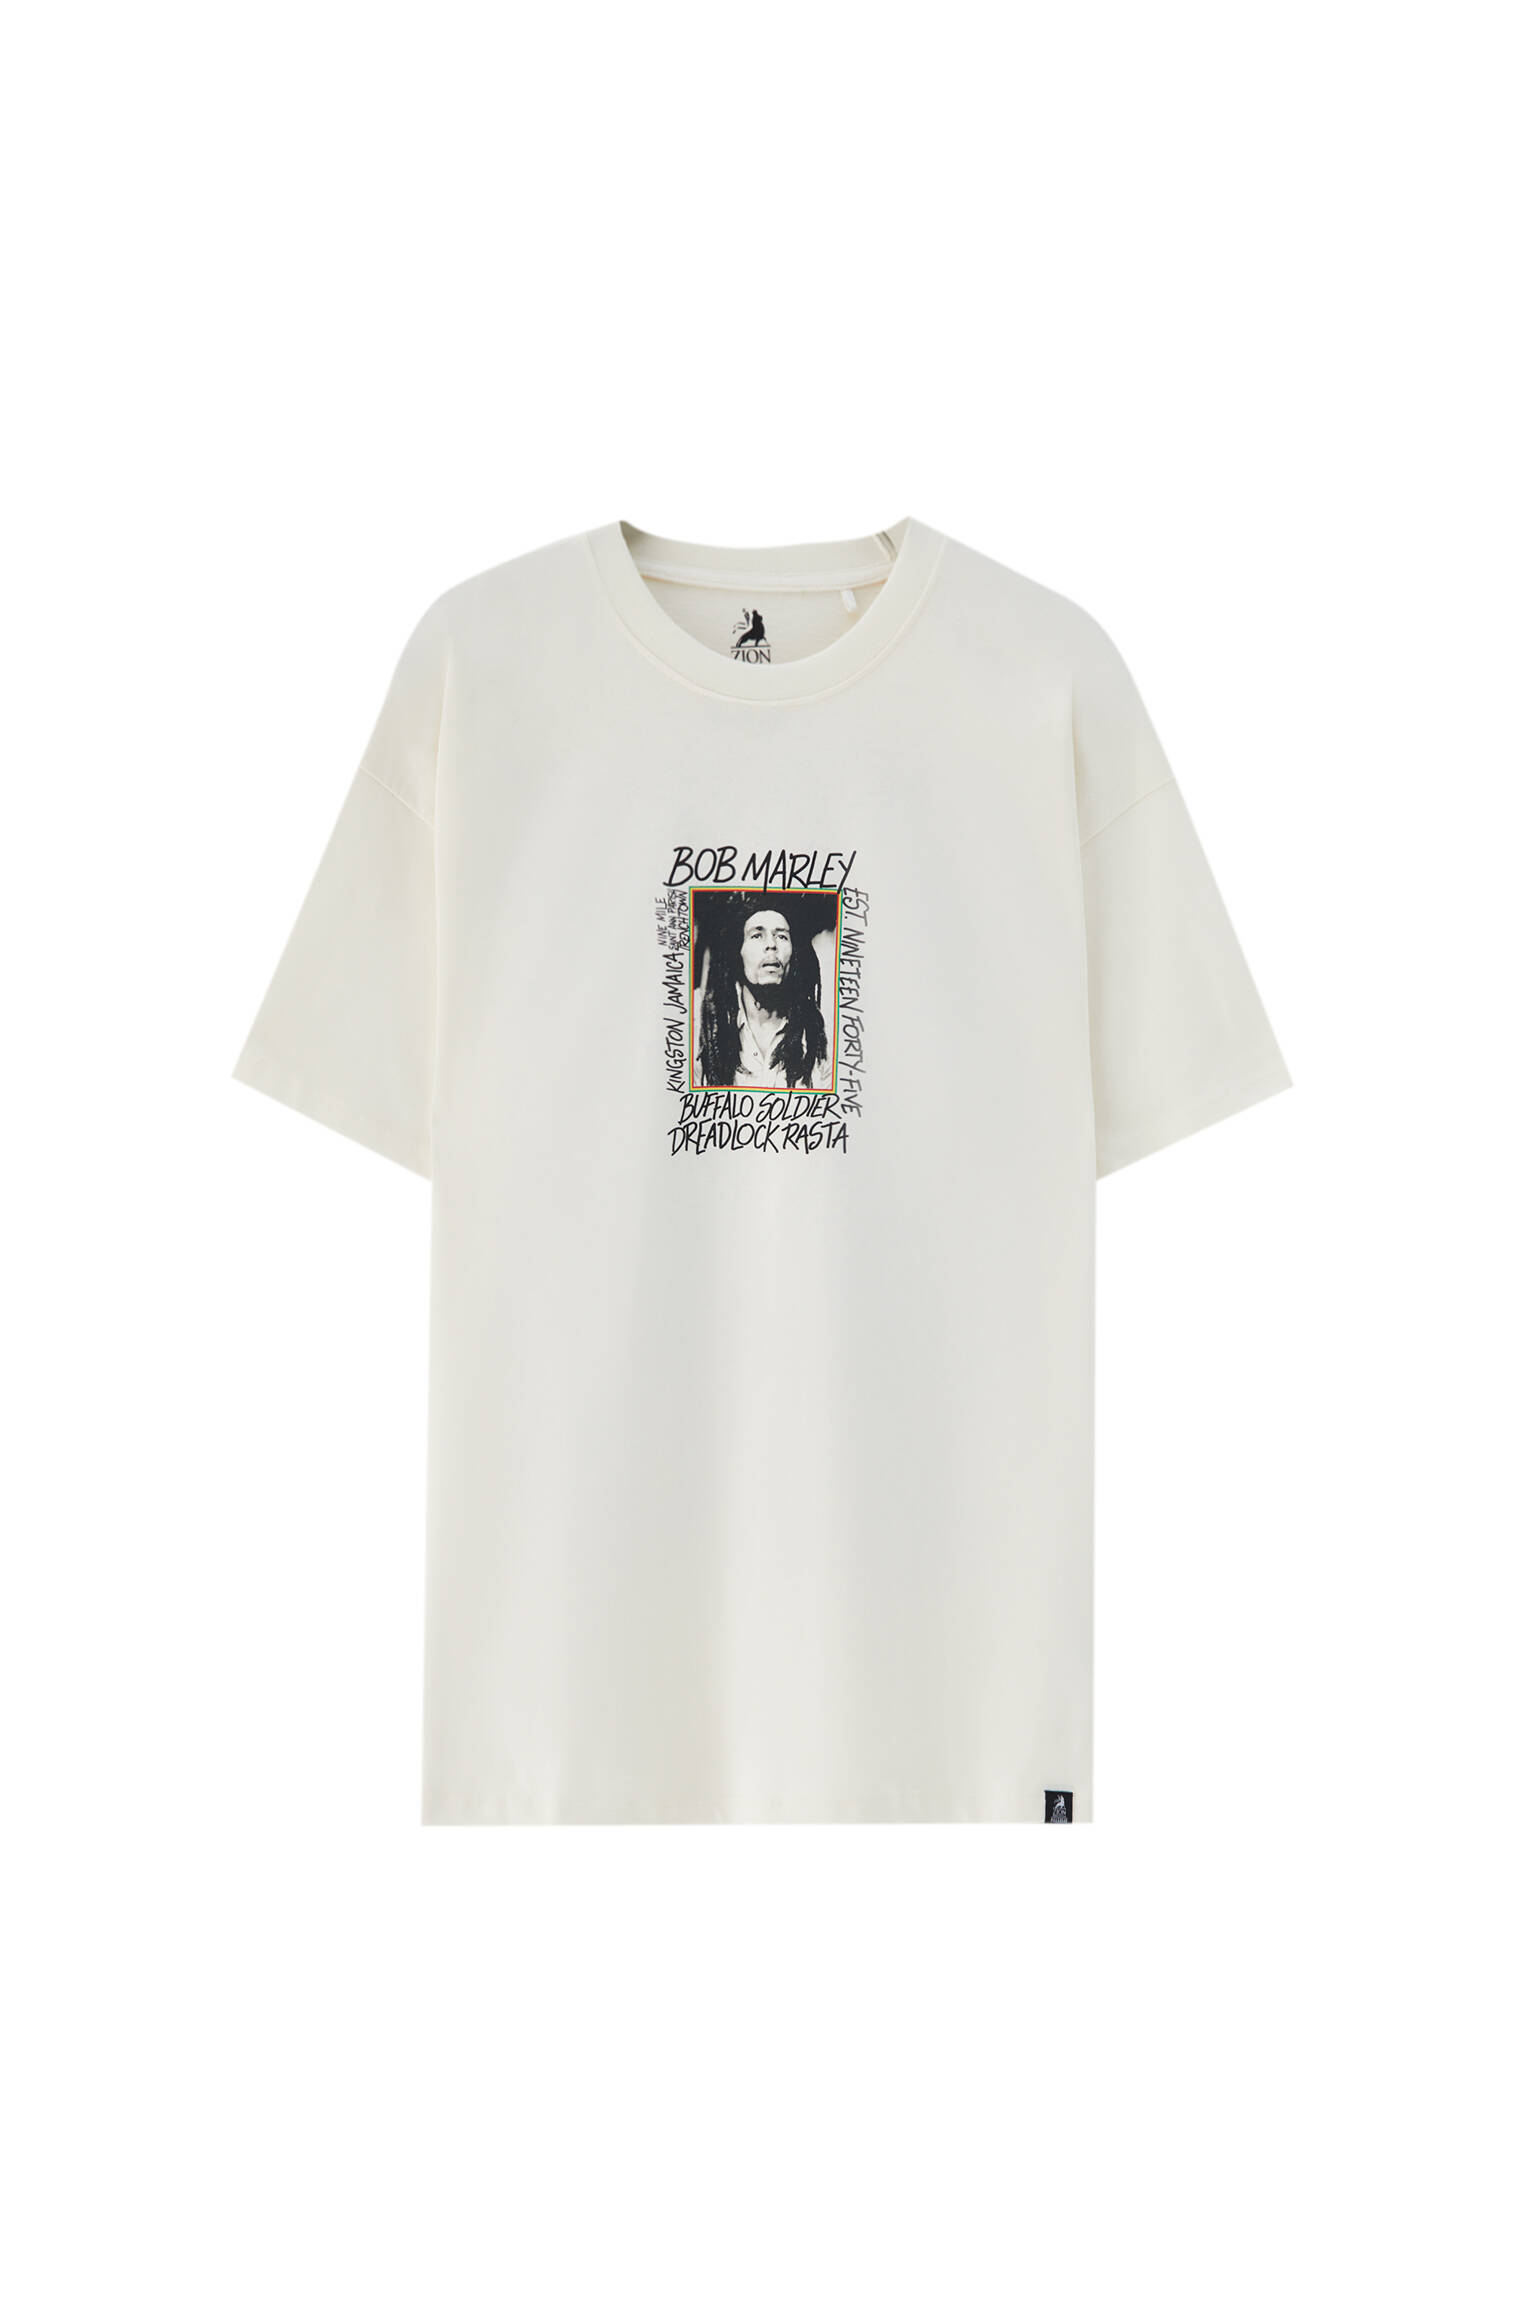 Pull&bear Homme T-shirt Blanc 100 % Coton à Manches Courtes Et Col Rond, Avec Illustration De Bob Marley Sur Le Devant. Blanc CassÉ S